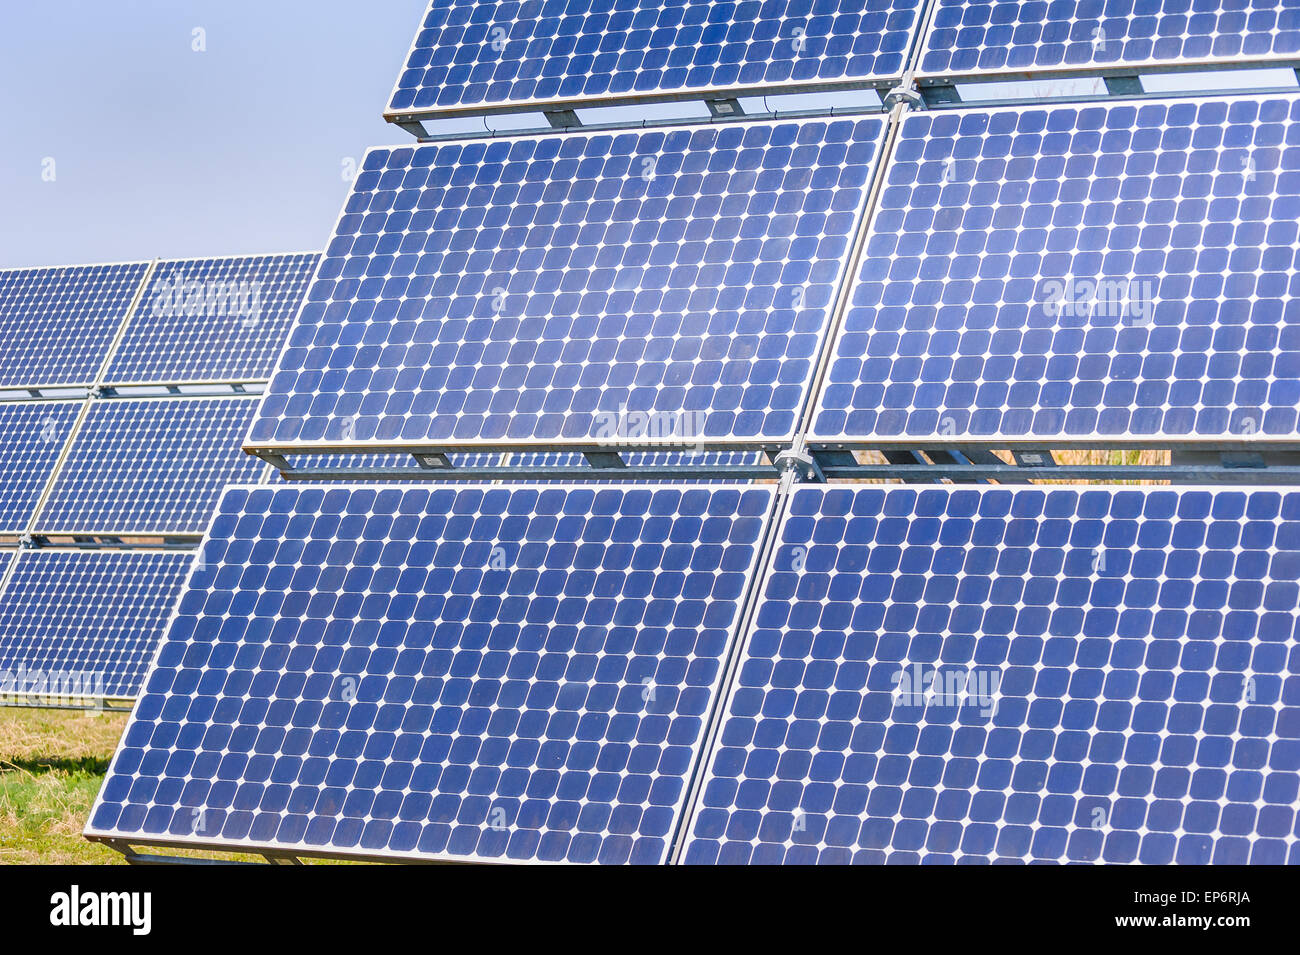 Des panneaux solaires pour produire de l'énergie dans le respect de l'environnement Banque D'Images